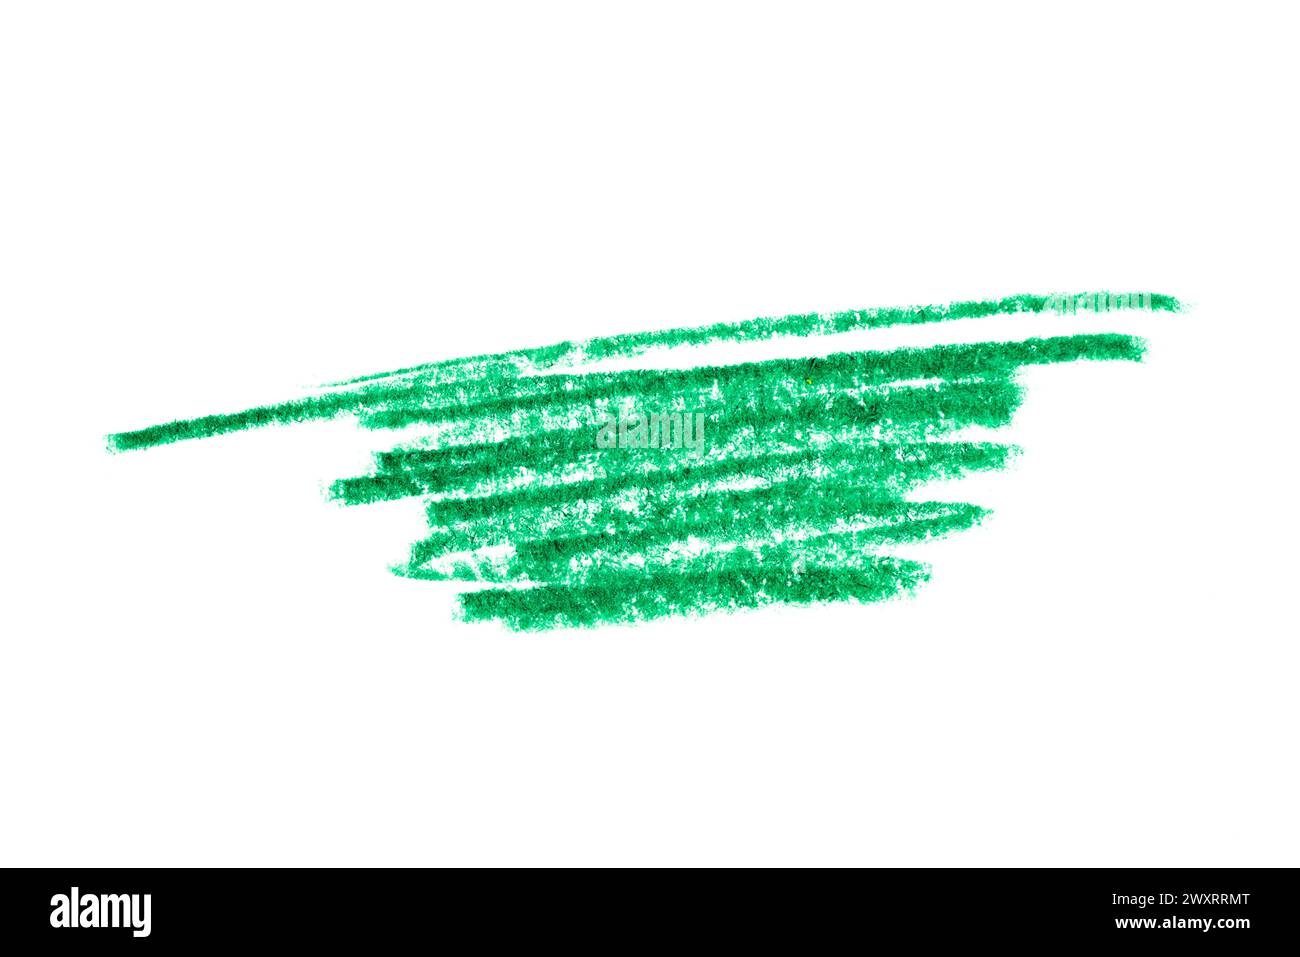 Une photo d'un trait de crayon vert artistique sur toile blanche. Banque D'Images